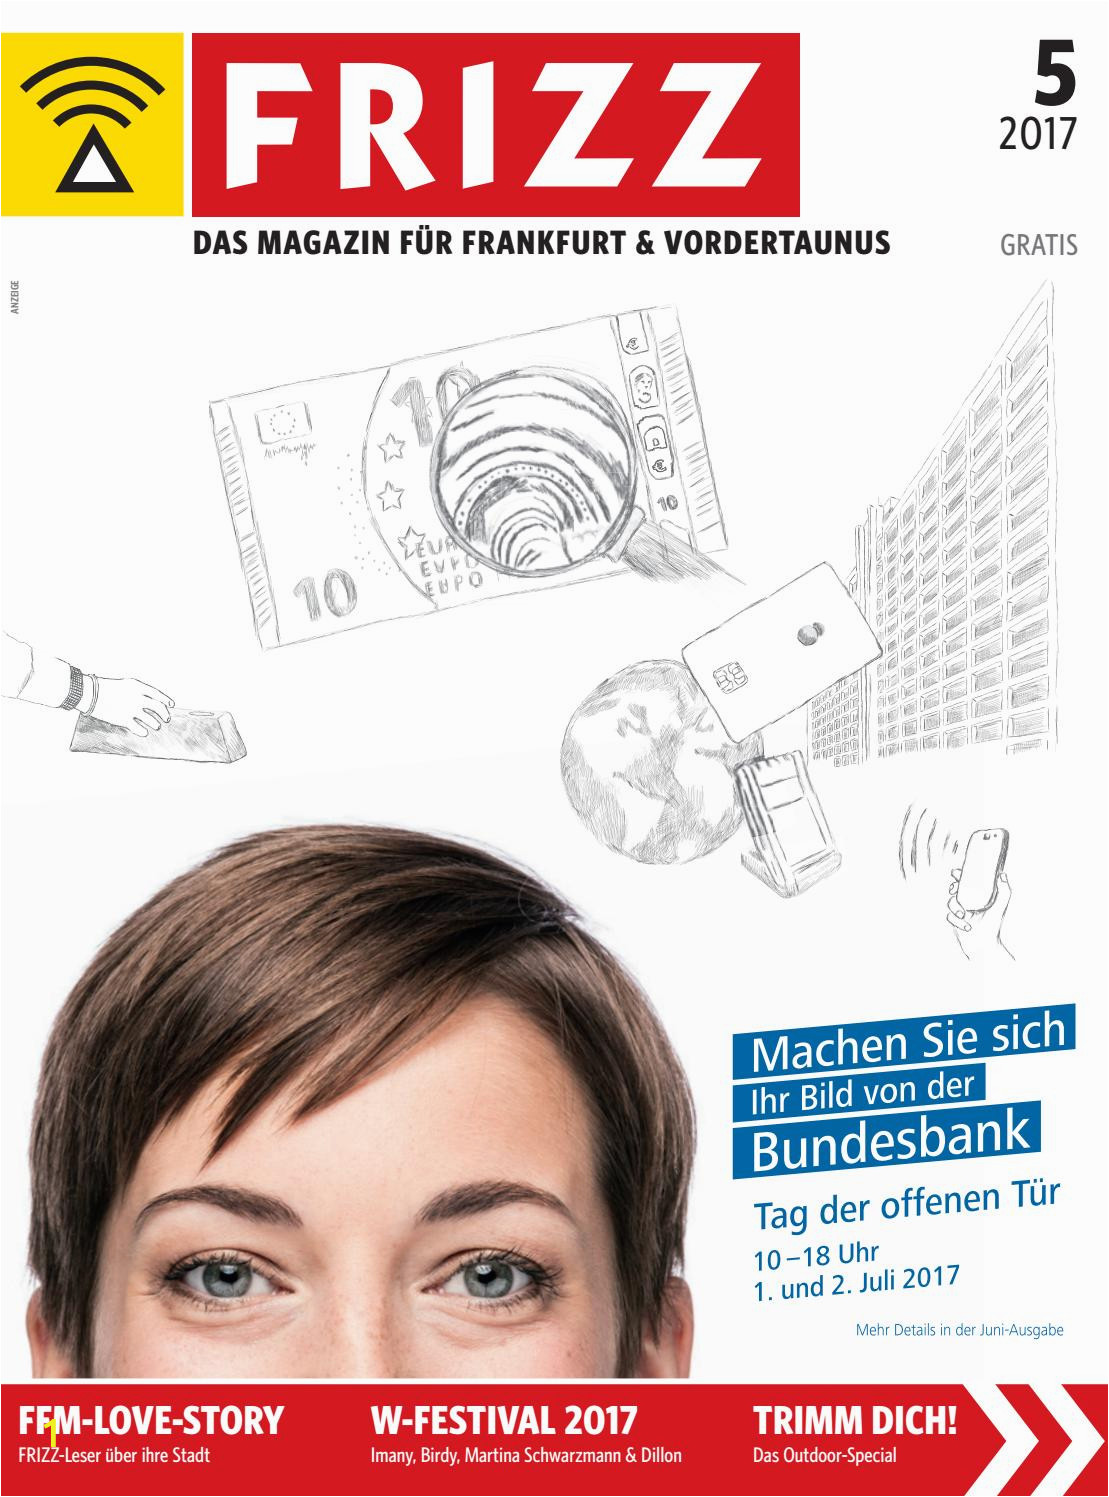 1 Samuel 16 7 Coloring Page Frizz Das Magazin Frankfurt Mai 2017 2 by Frizz Frankfurt